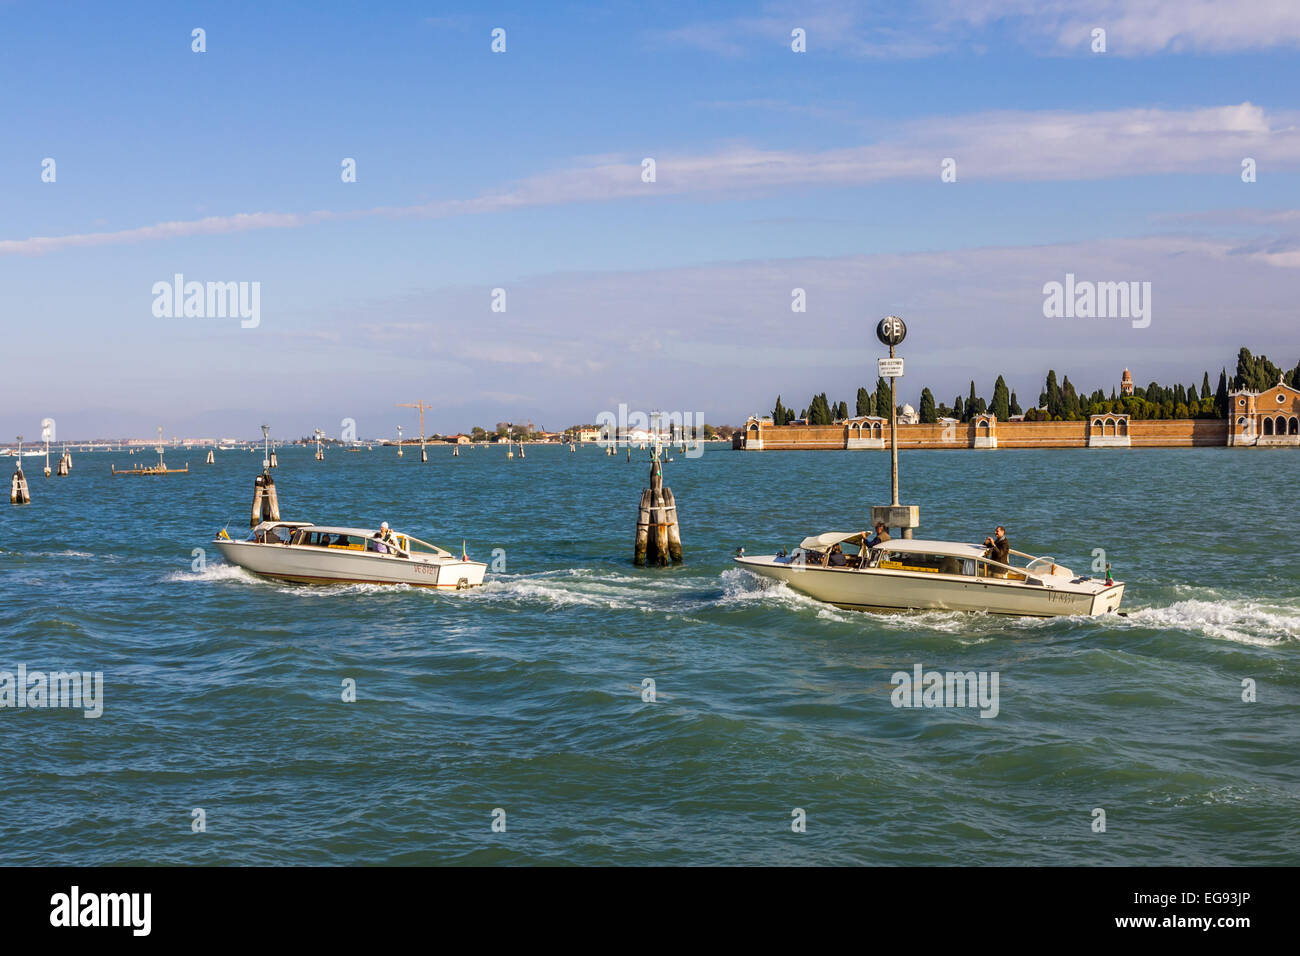 Les taxis d'eau lagune de Venise Italie Banque D'Images